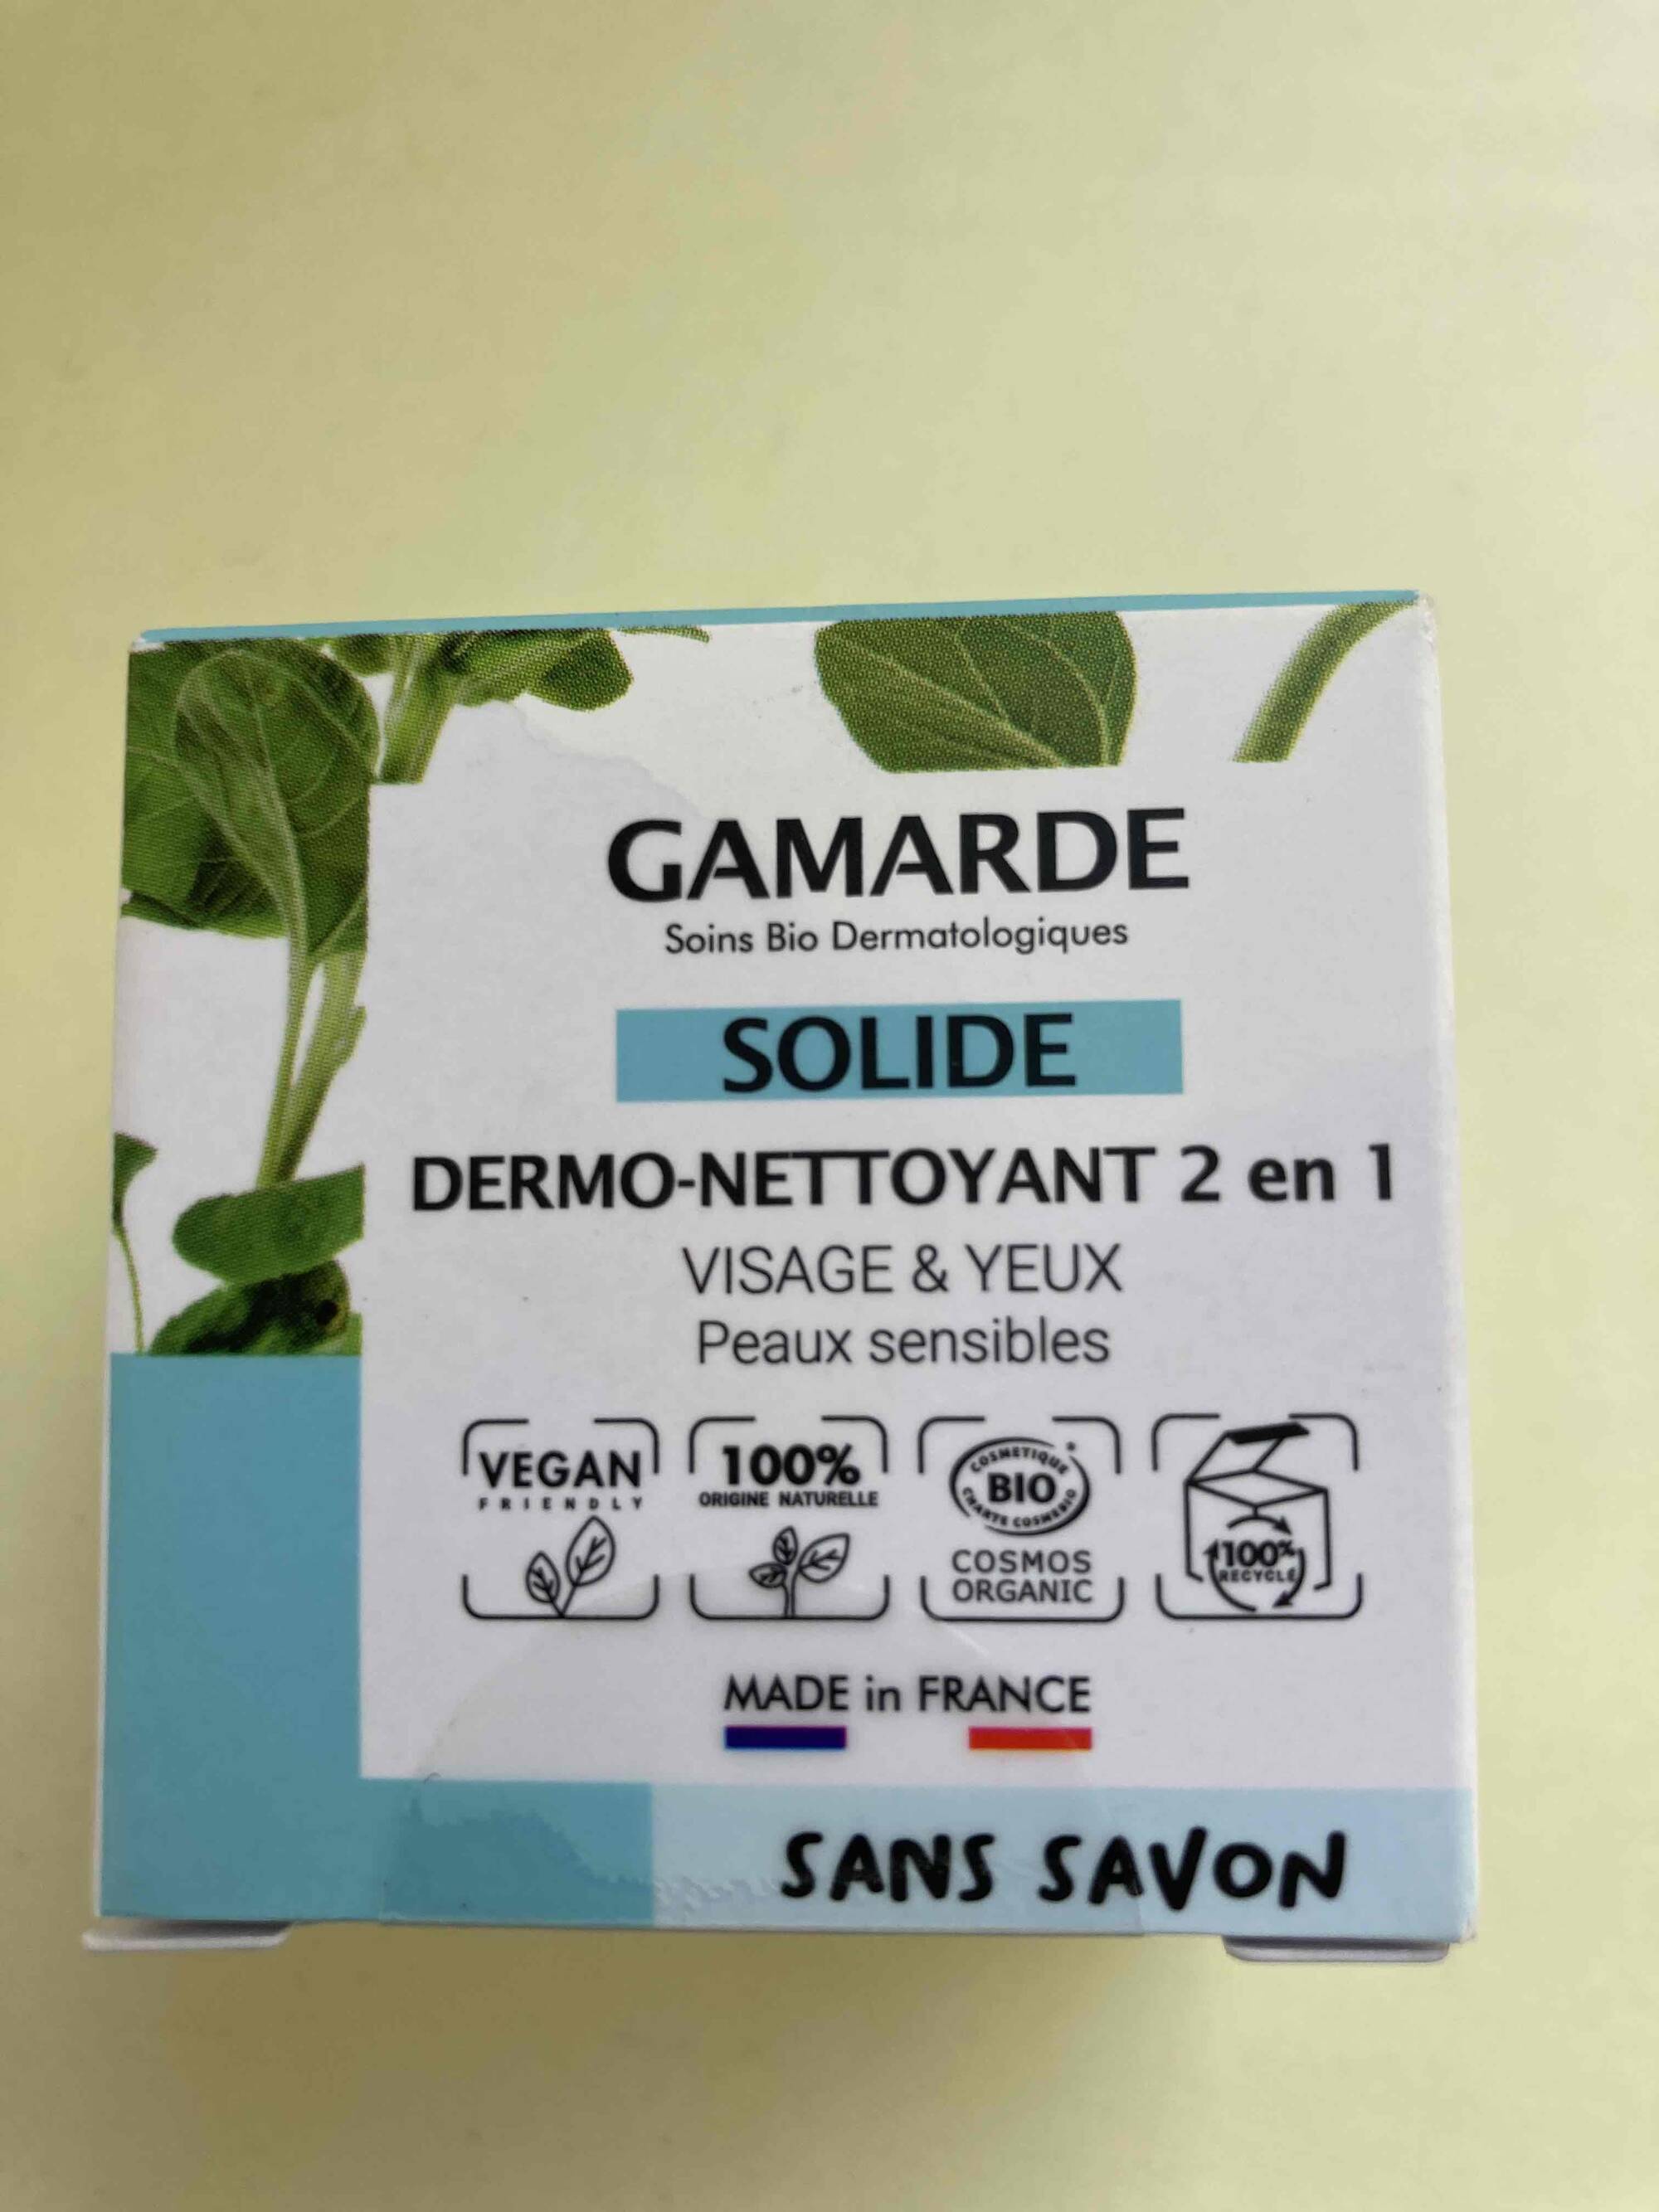 GAMARDE - Dermo-nettoyant 2 en 1 solide sans savon